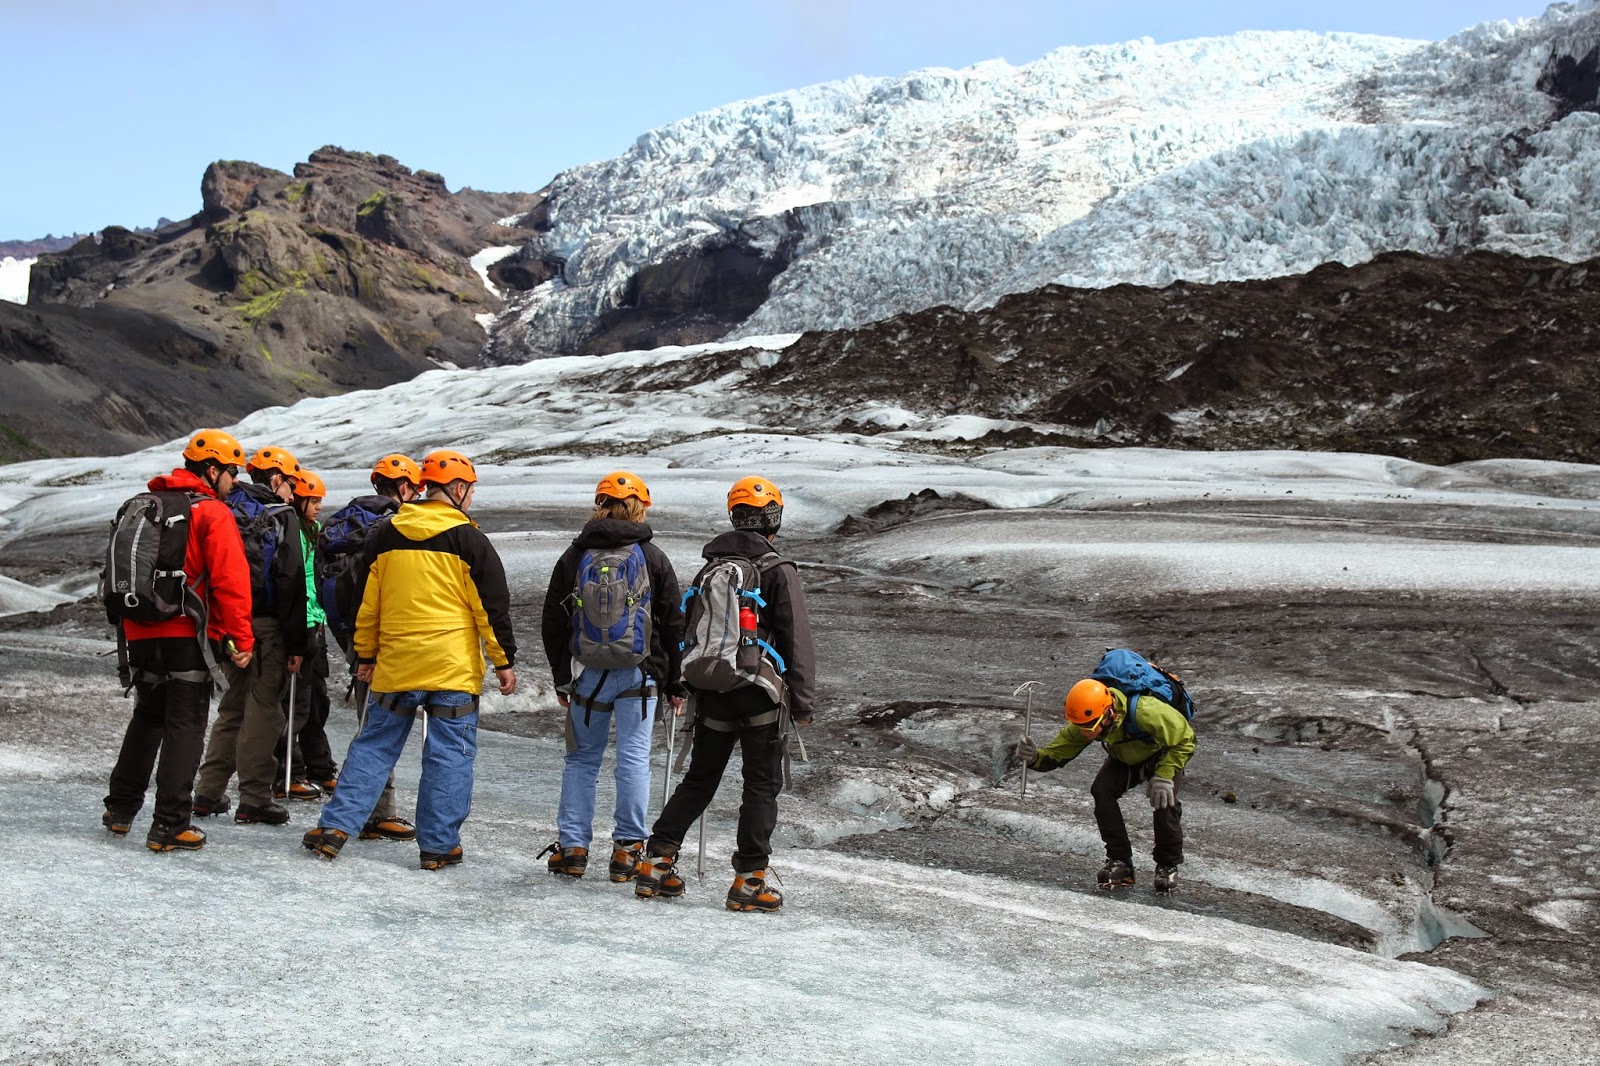 ESCALADA NO GELO EM VATNAJOKULL, uma experiência inesquecível no Vatnajokull com os Glacier Guides | Islândia